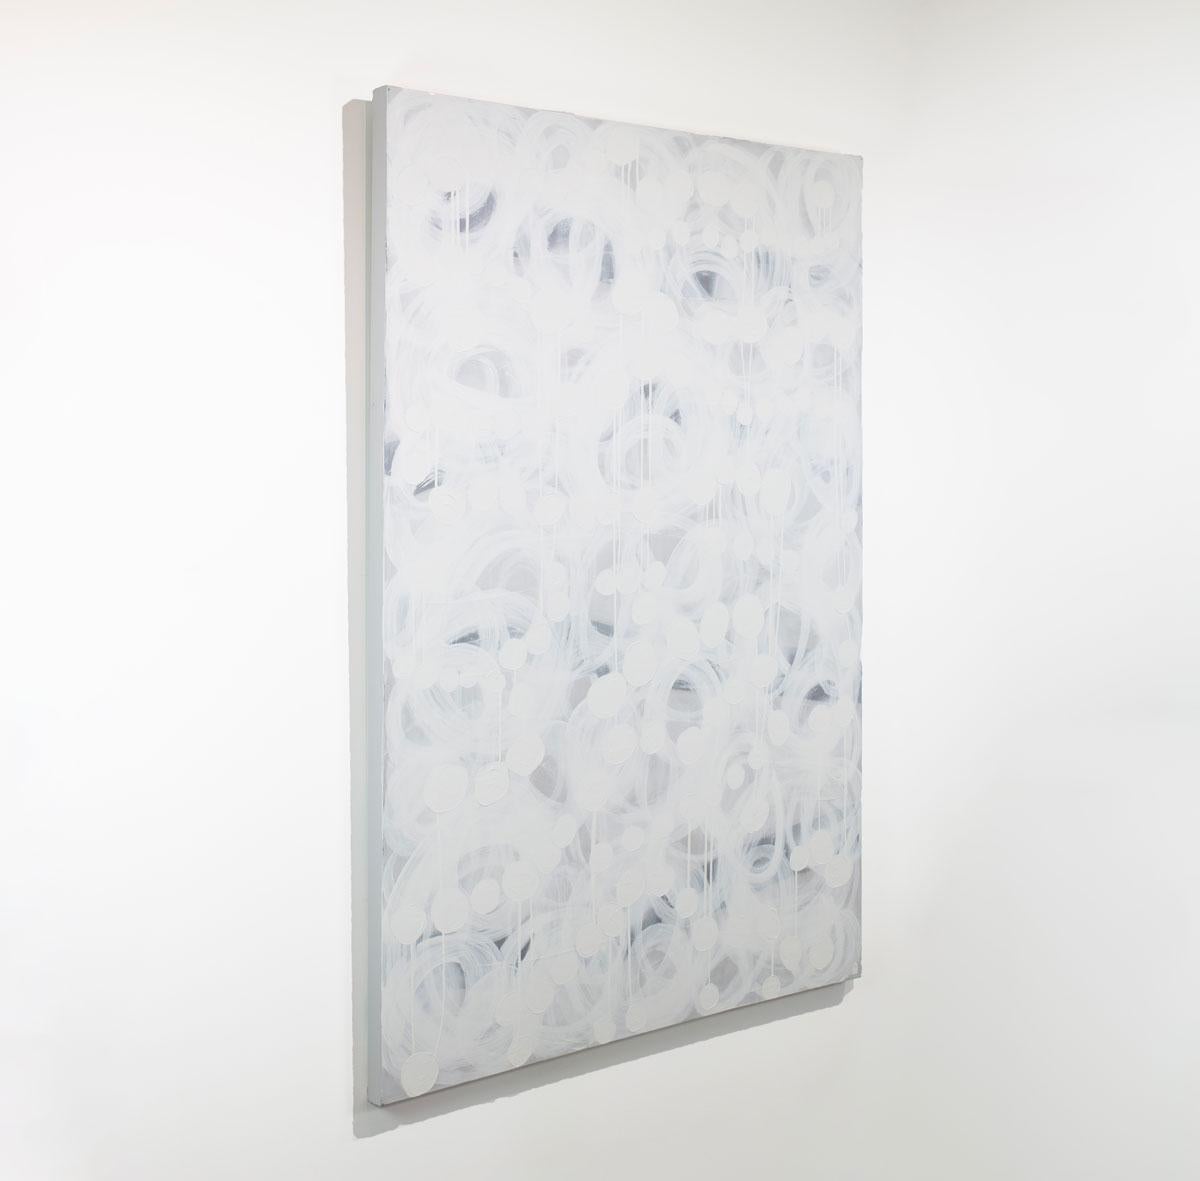 Ce grand tableau abstrait de Sofie Swann présente une palette de blanc et de gris clair, avec des coups de pinceau lâches qui forment des cercles concentriques énergiques sur toute la toile, superposés à de plus petits cercles blancs. Cette peinture